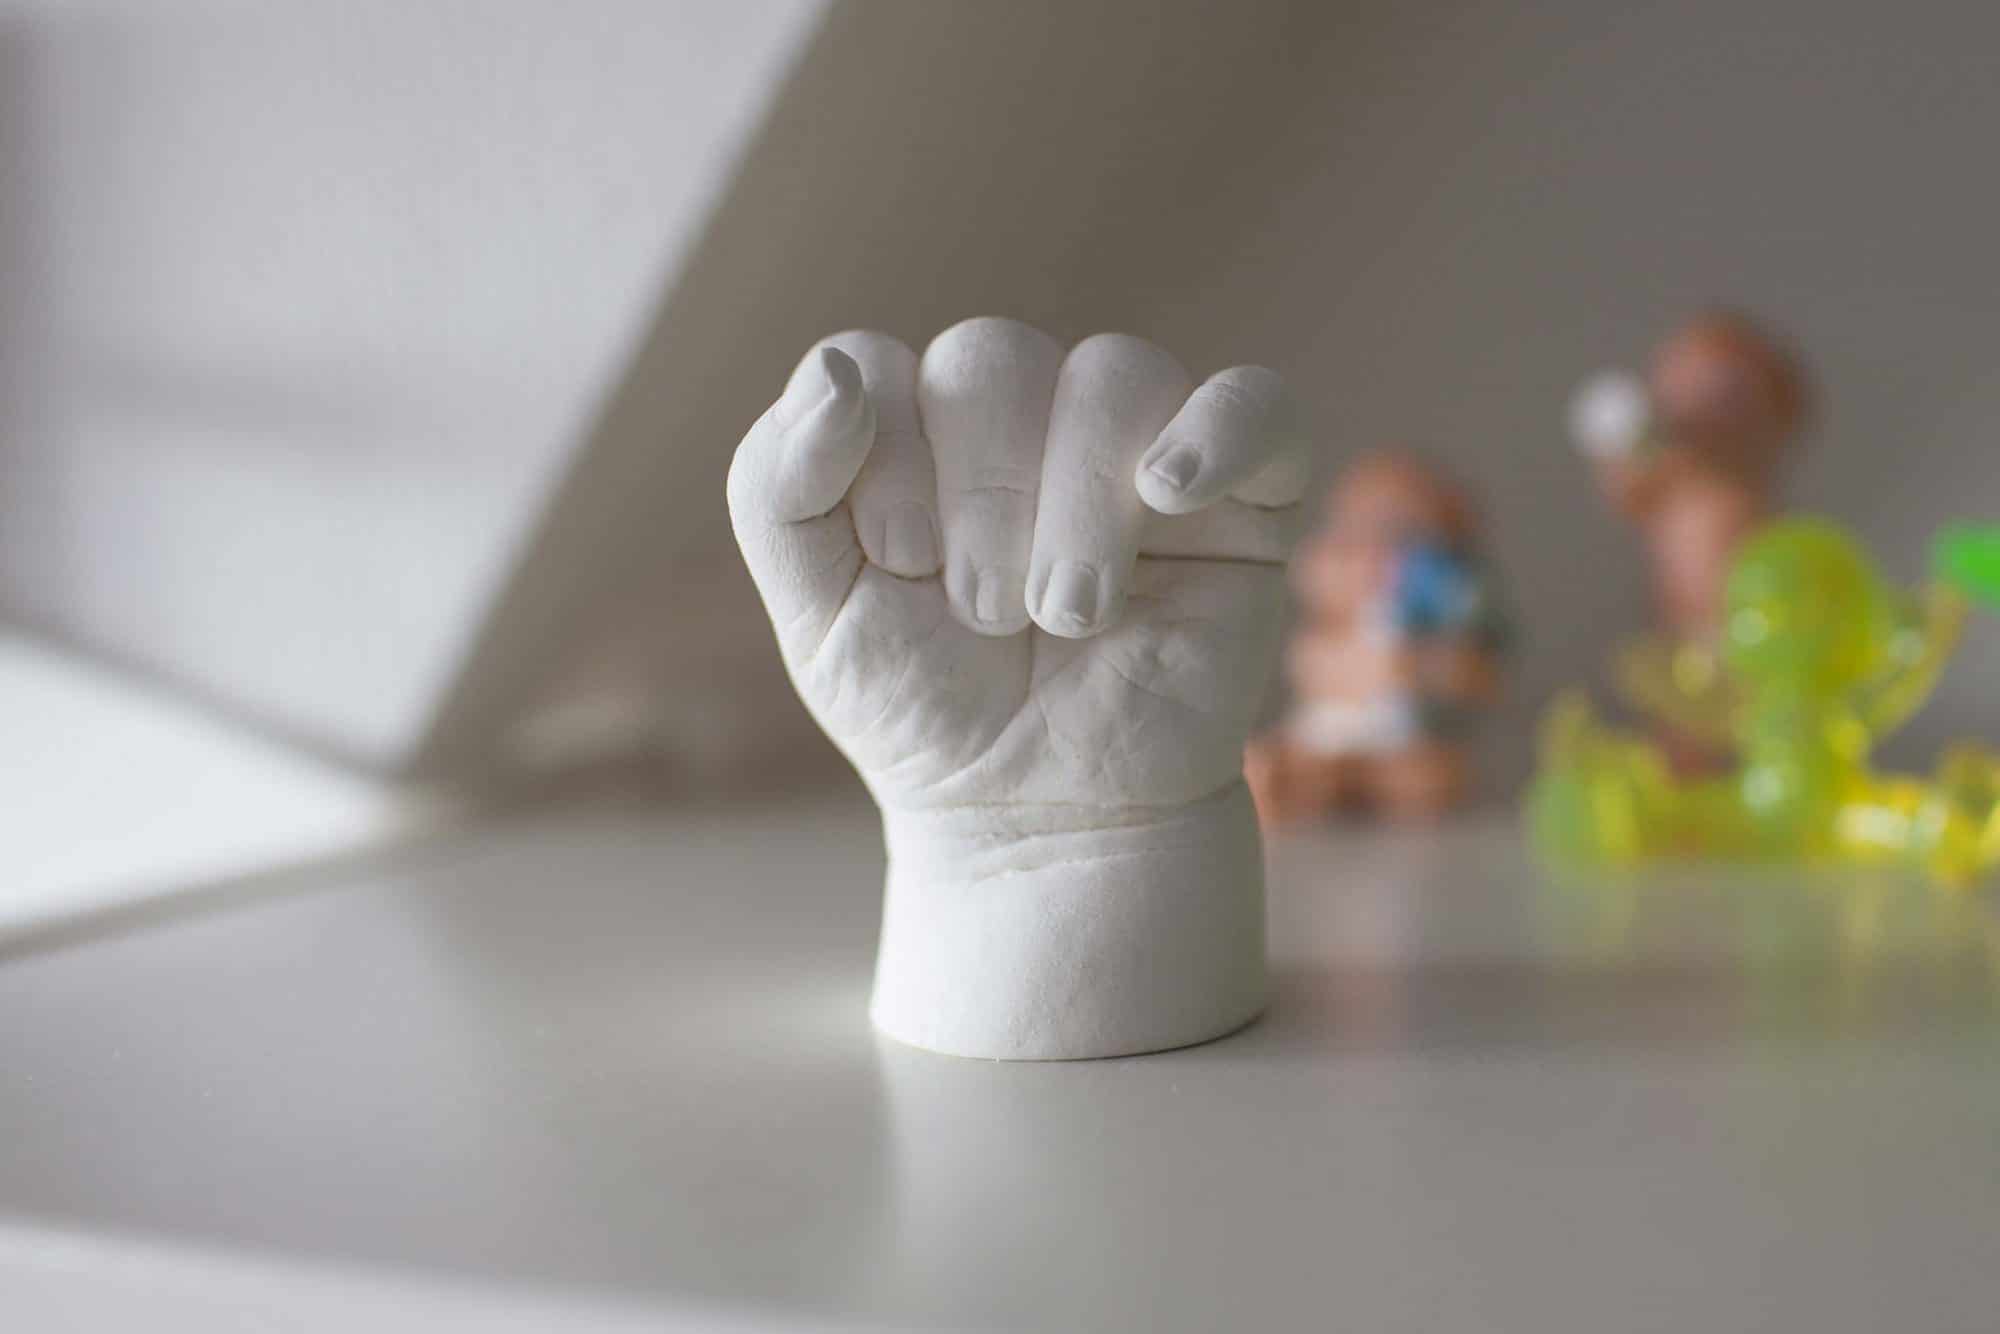 Kit de Moulage Main Famille Empreinte 3D pour Adultes Parents Grands-Parent